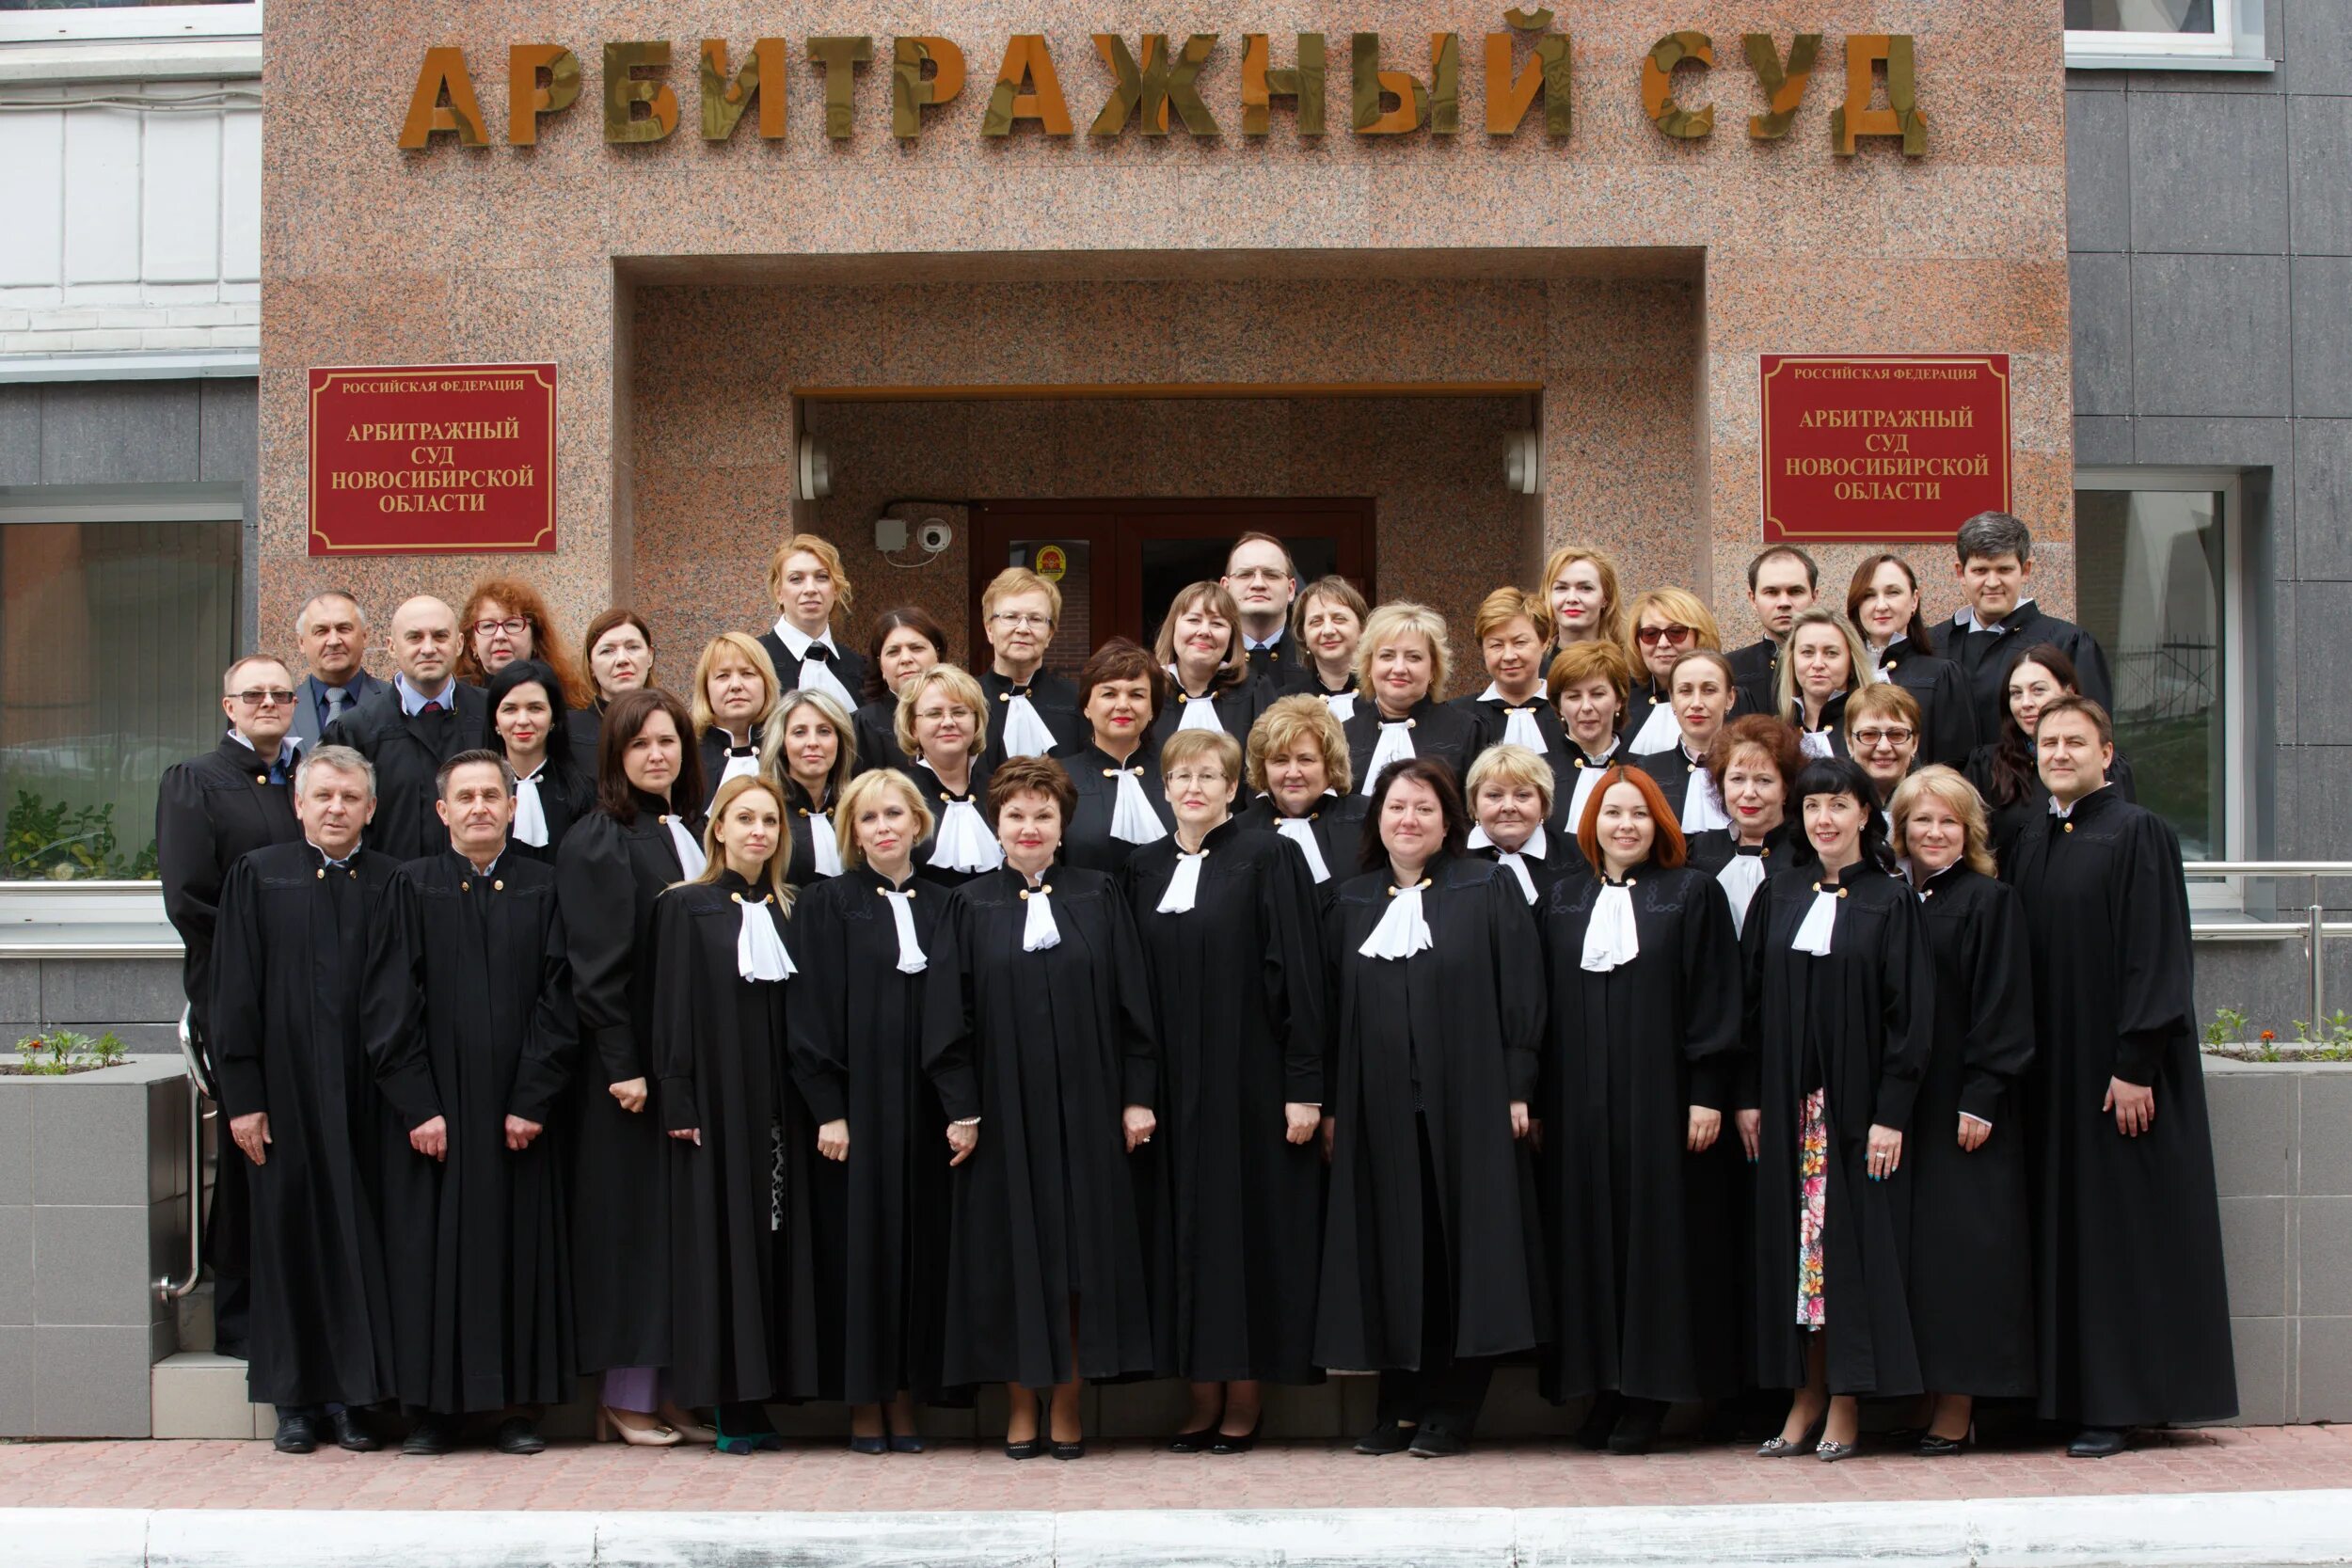 Новосибирский районный суд новосибирской области